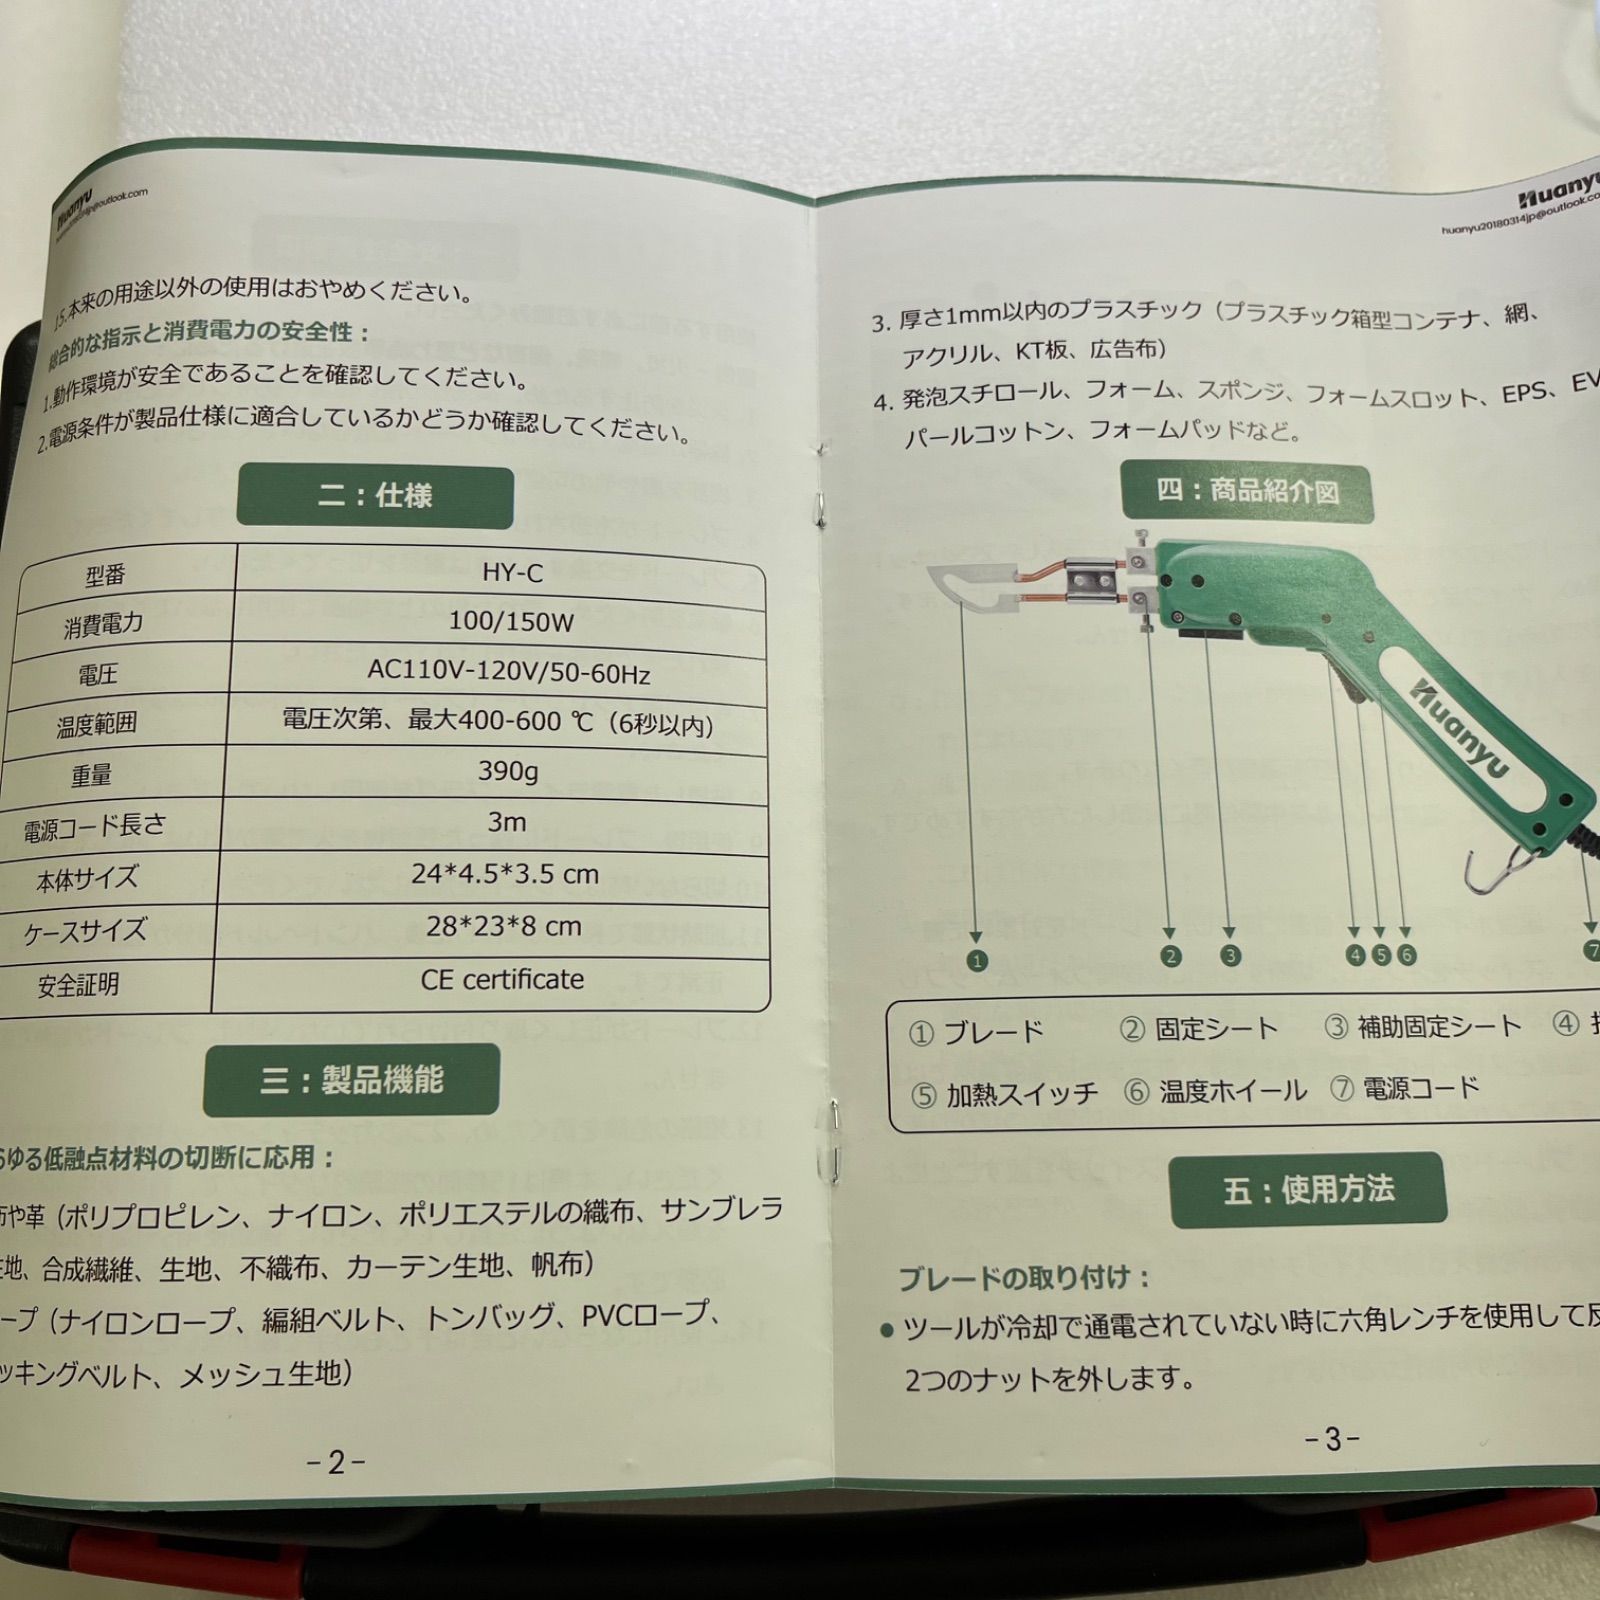 新品未使用☆Huanyu 発泡スチロールカッター ホットカッター 15CM/150W